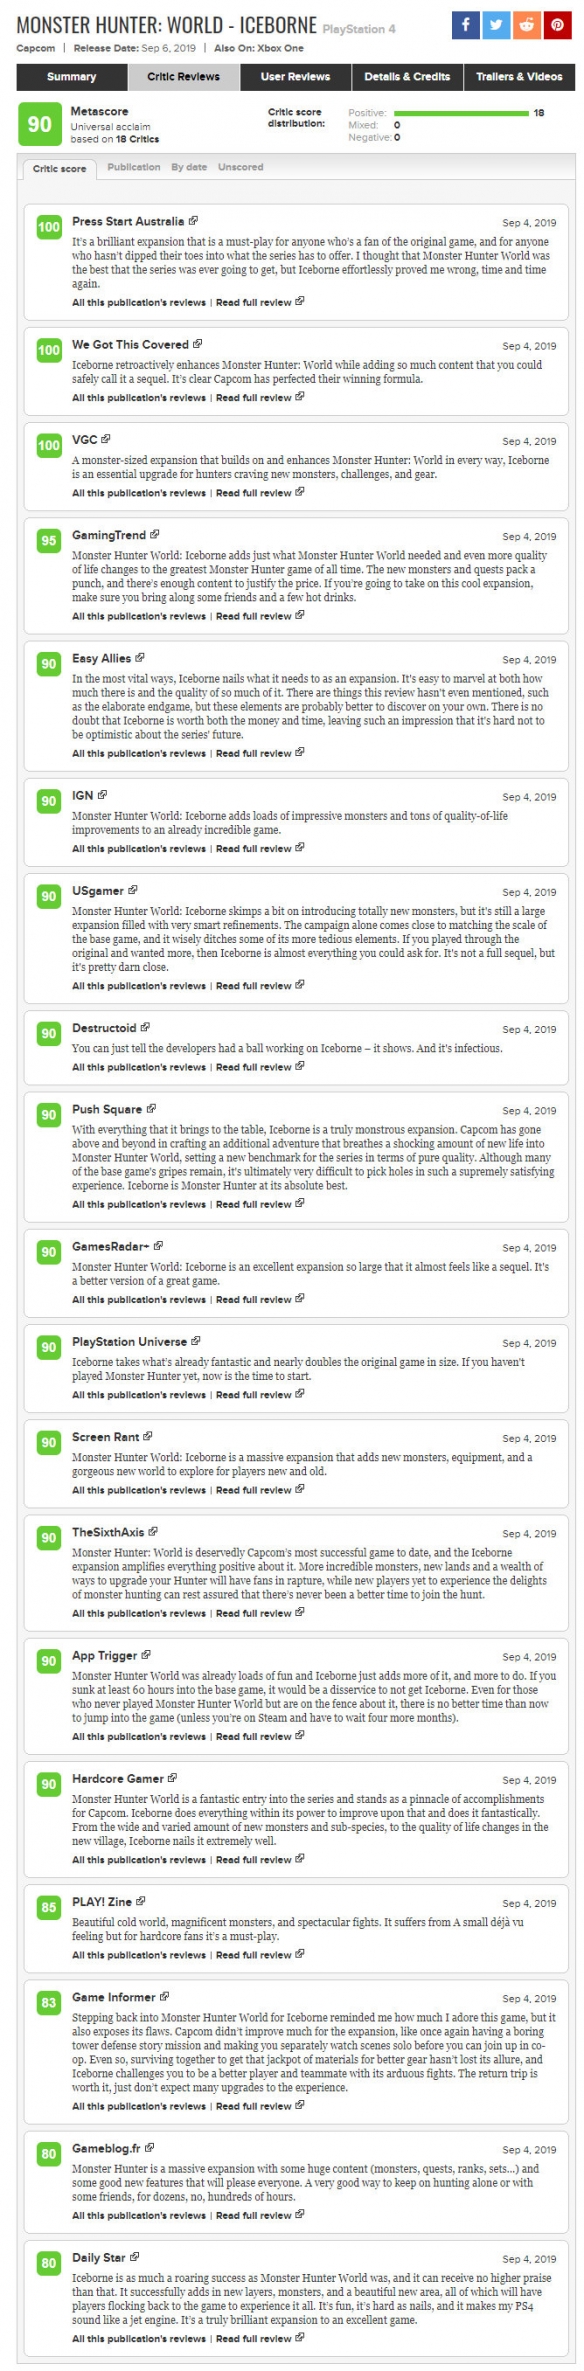 怪物猎人世界冰原媒体评分IGN9分 M站媒体均分90不乏满分